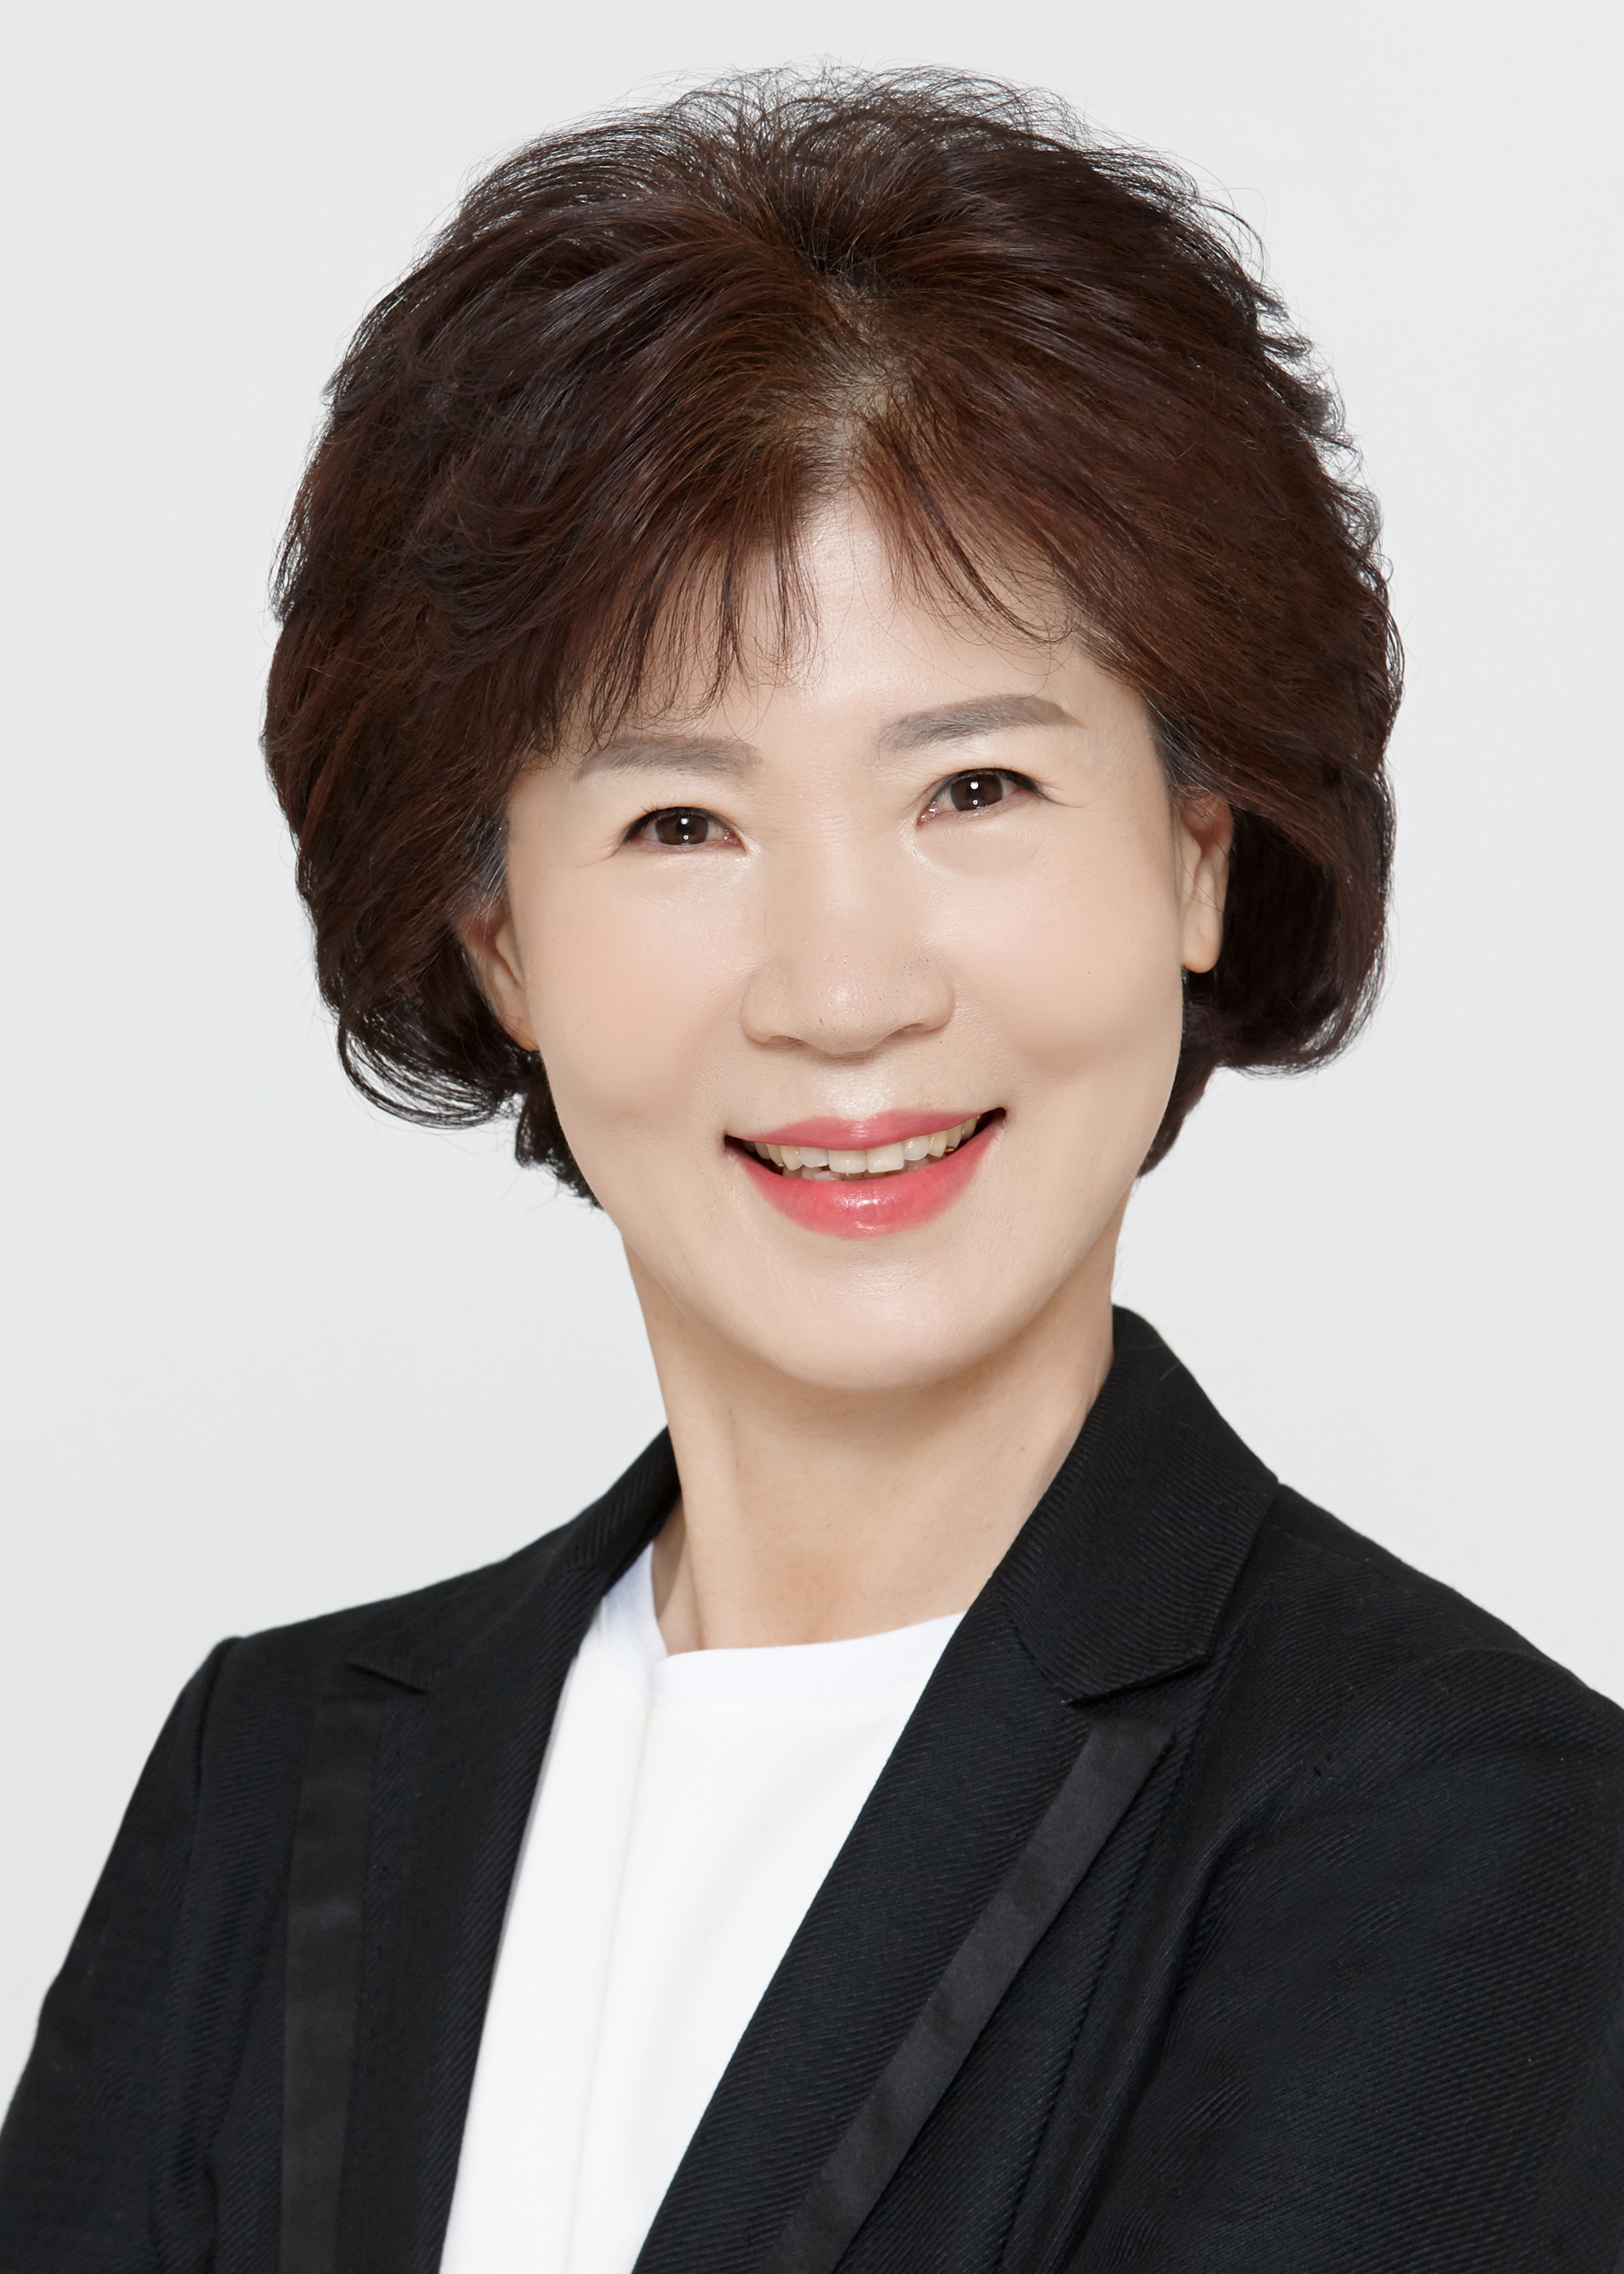 김광심 강남구의회 의원(예산결산특별위원장)